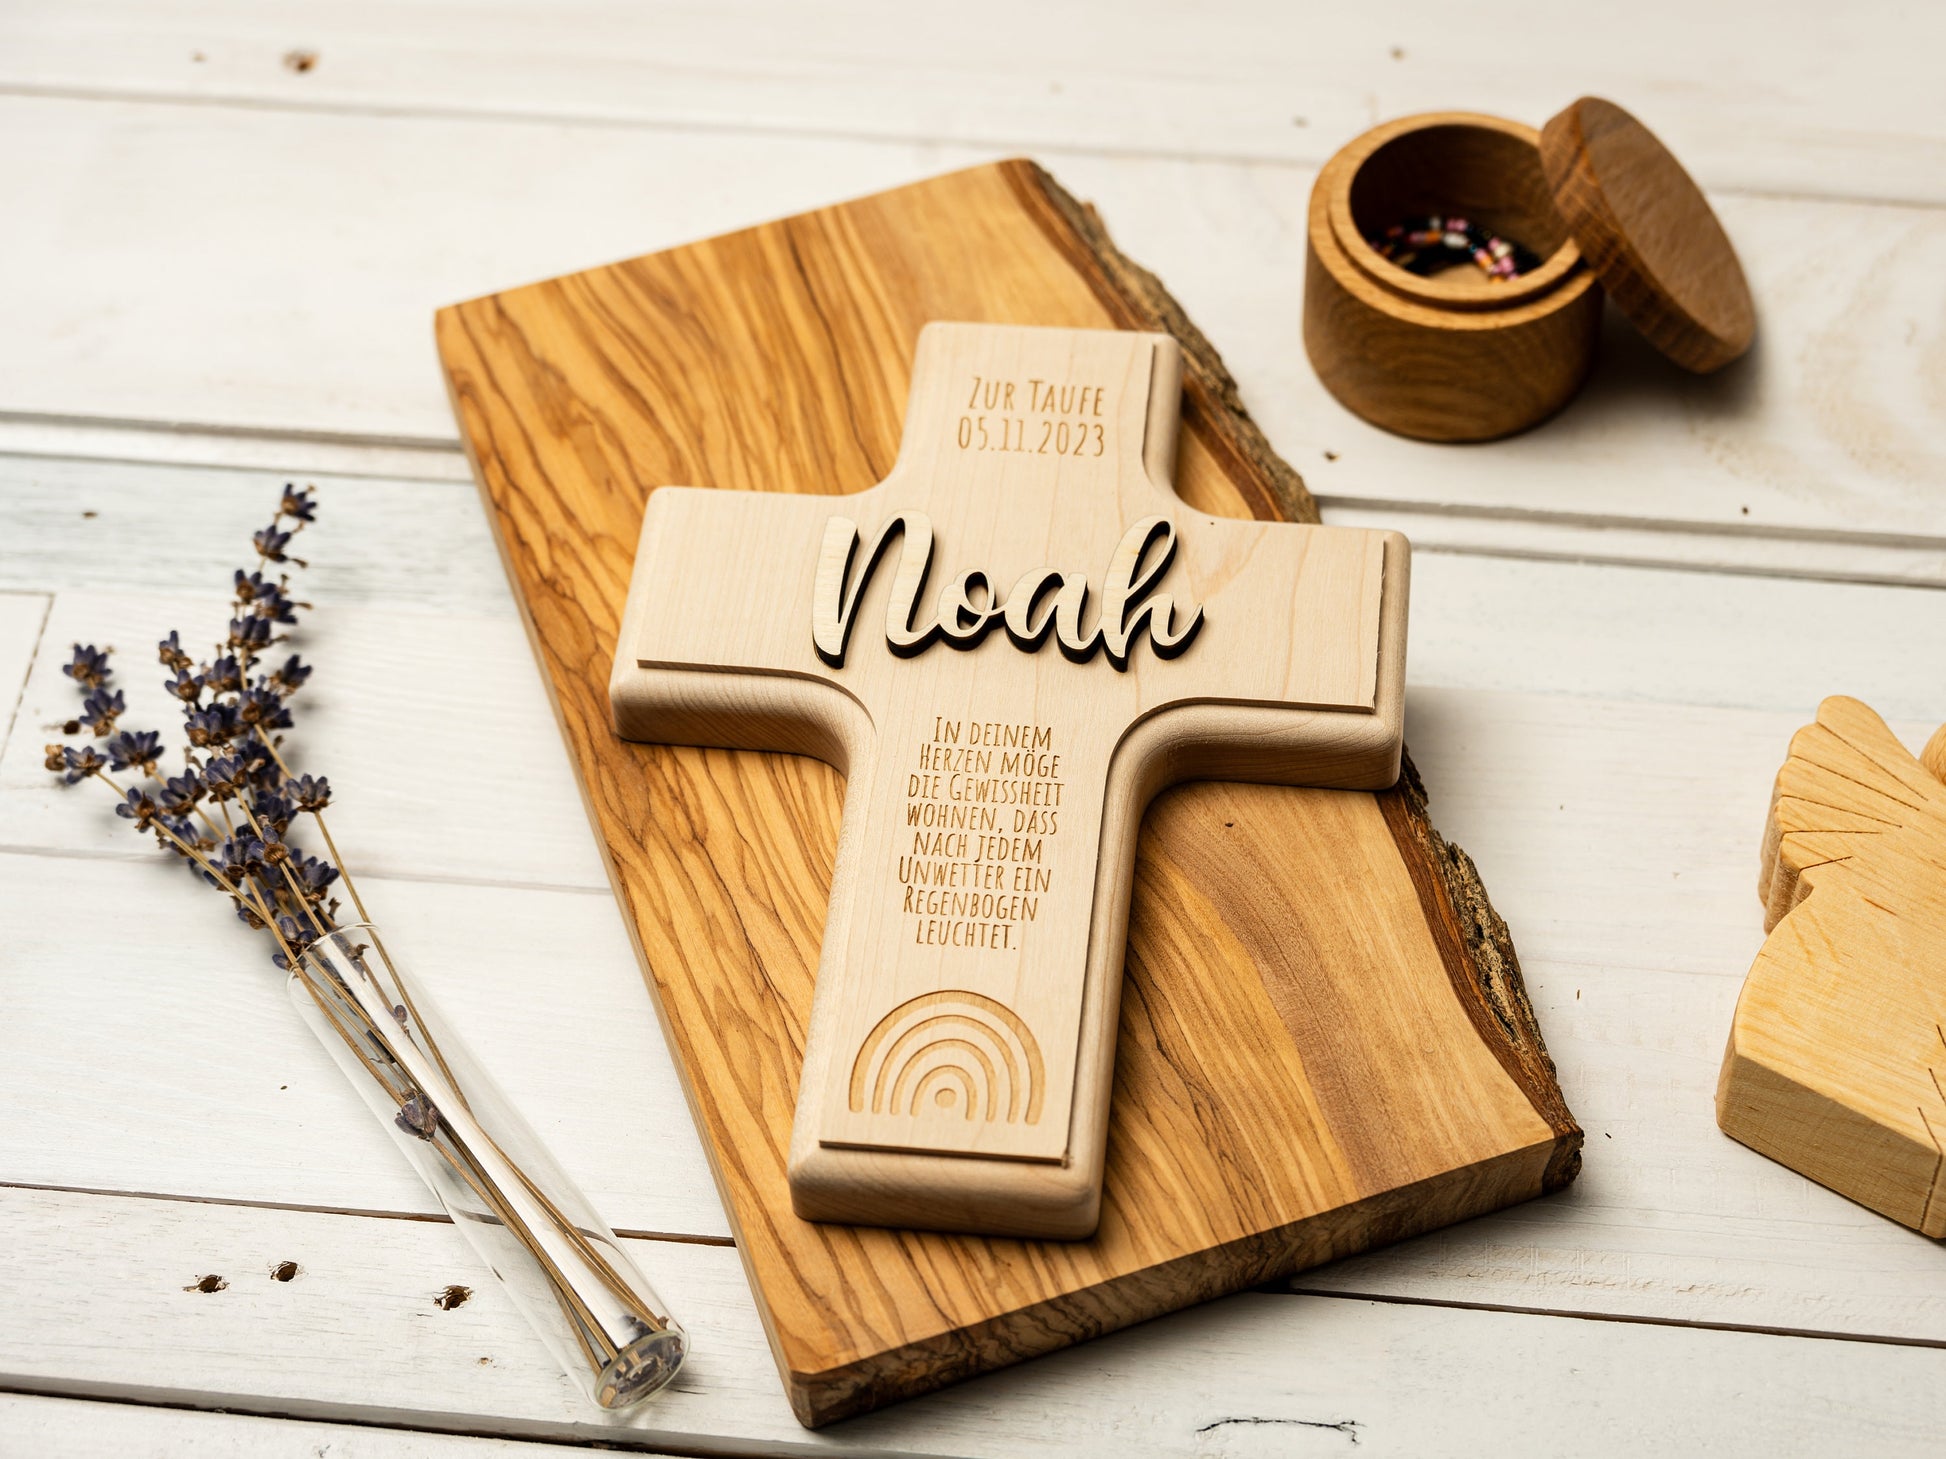 TAUFKREUZ - personalisiertes Geschenk zur Taufe - Taufgeschenk - Holzkreuz - Kreuz Kommunion, Kreuz Konfirmation, Kreuz aus Holz, Geschenk